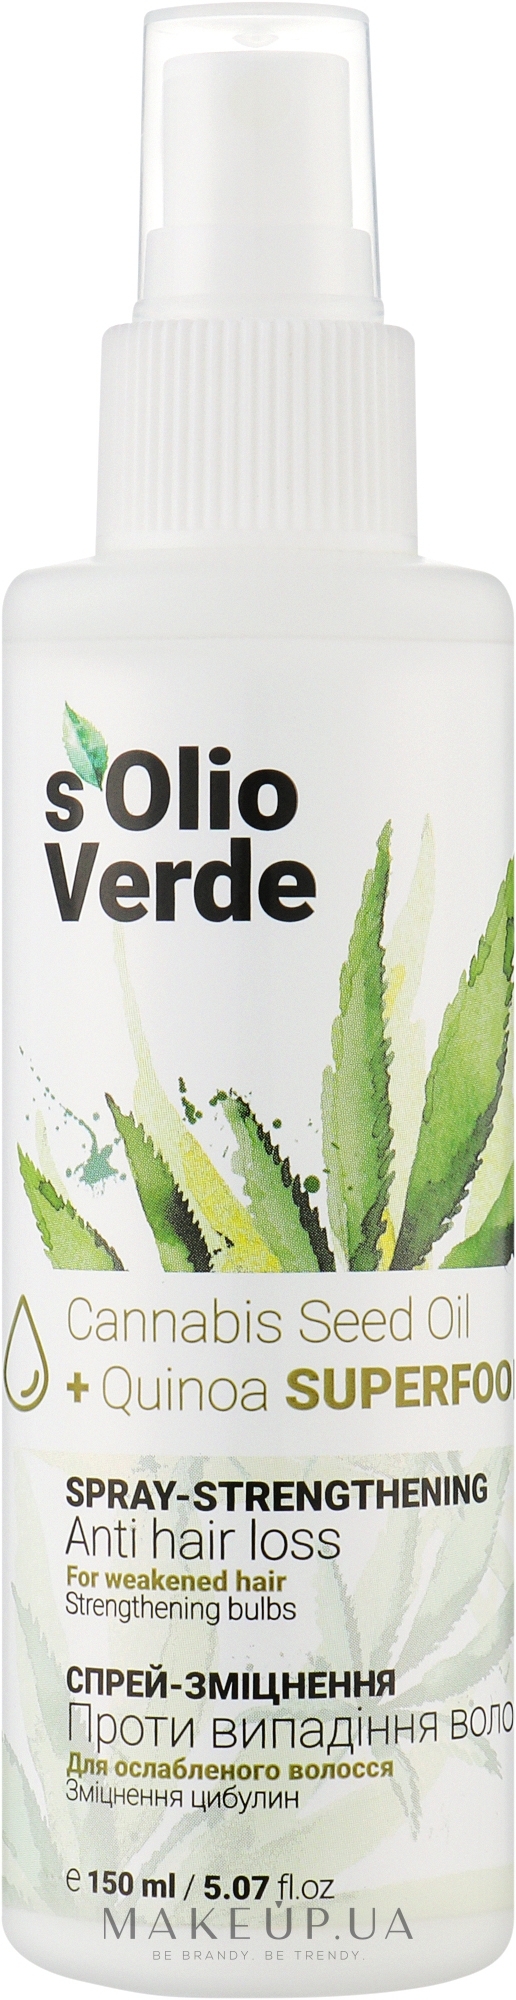 Спрей-укрепление против выпадения волос - Solio Verde Cannabis Speed Oil Spray-Strengthening — фото 150ml